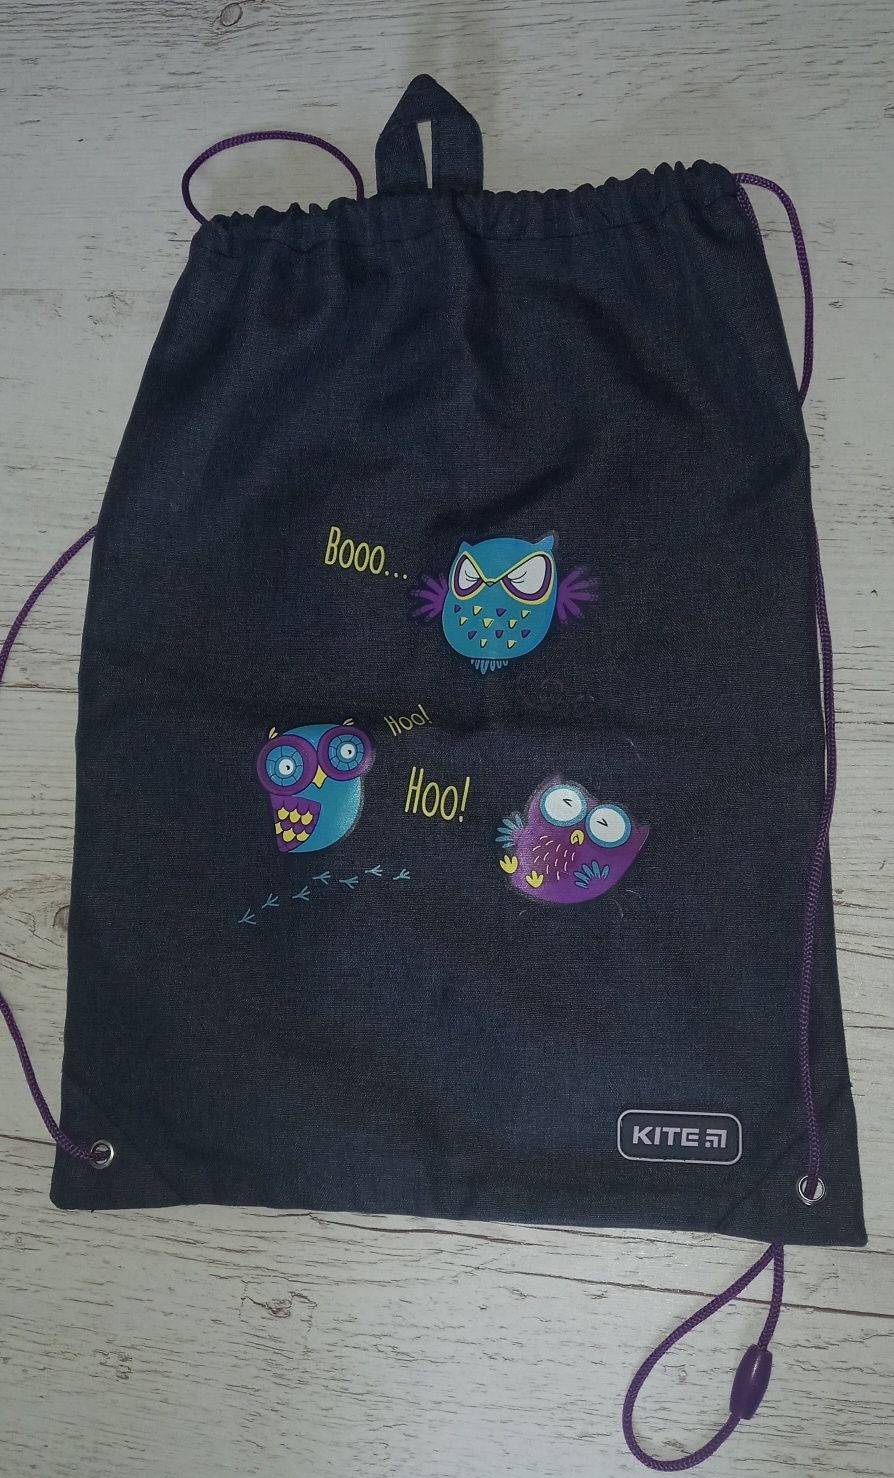 Шкільний рюкзак для дівчинки фірми "Kite"